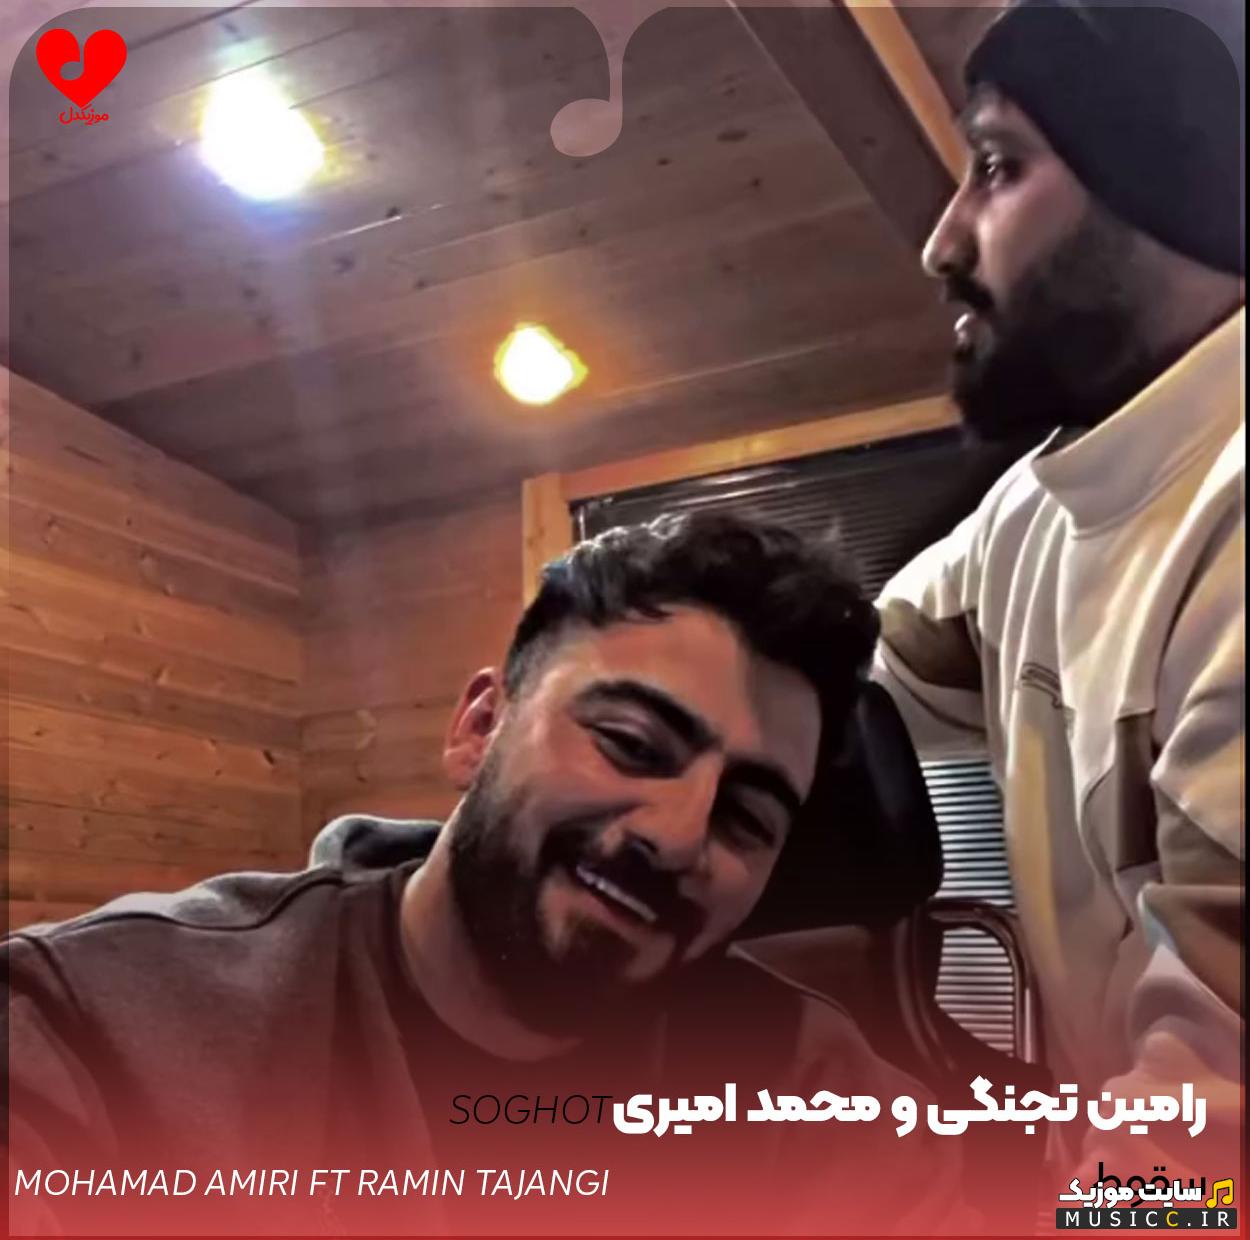 دانلود آهنگ تنها دلیل سقوطم بودی از محمد امیری + (ریمیکس و اصلی)